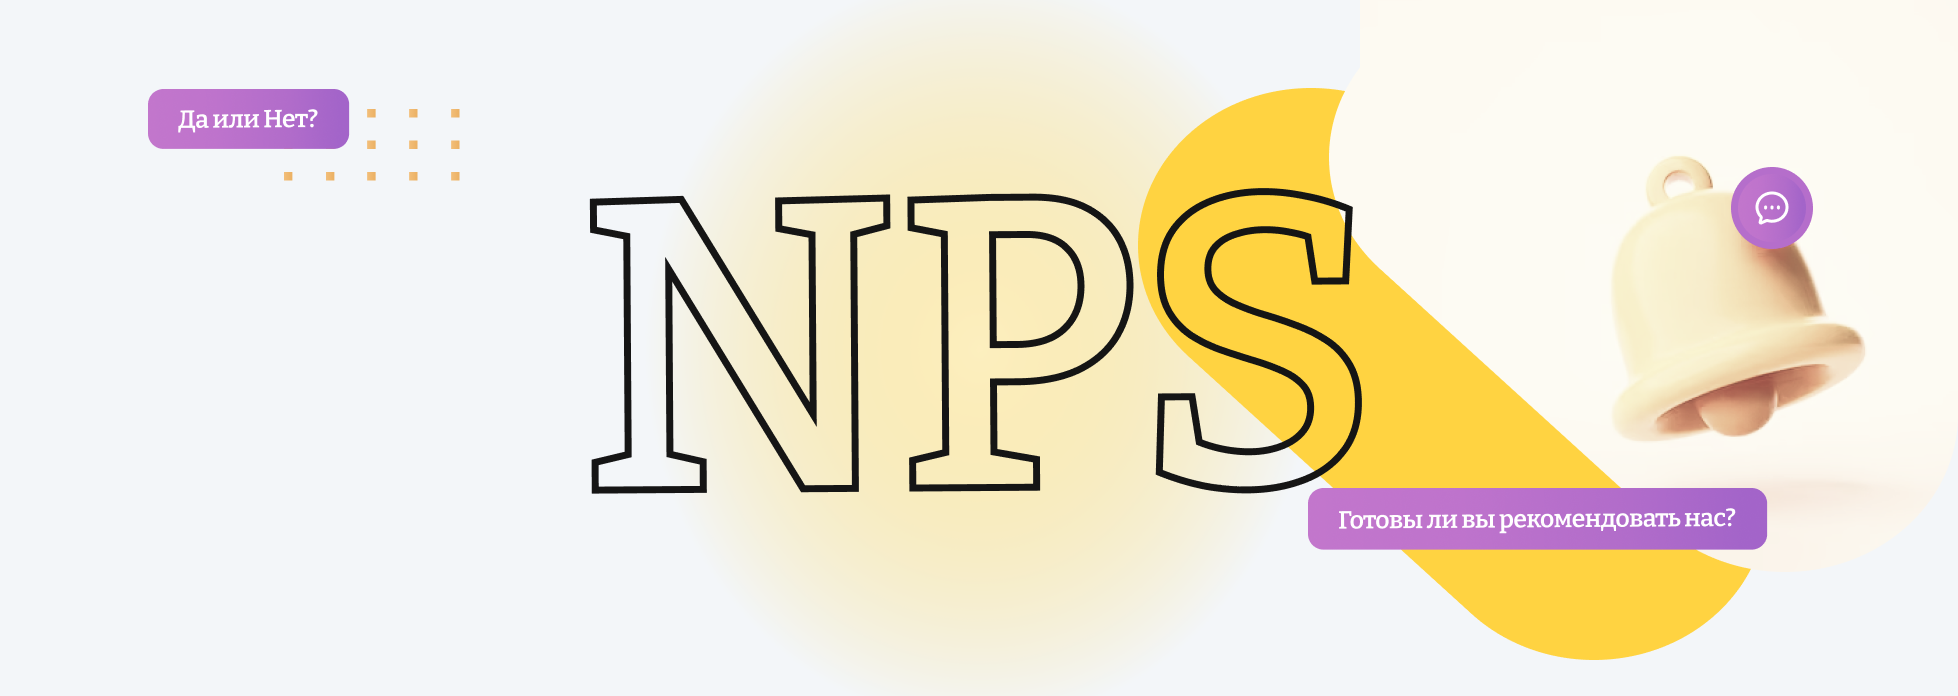 Индекс NPS: значение и роль для бизнеса